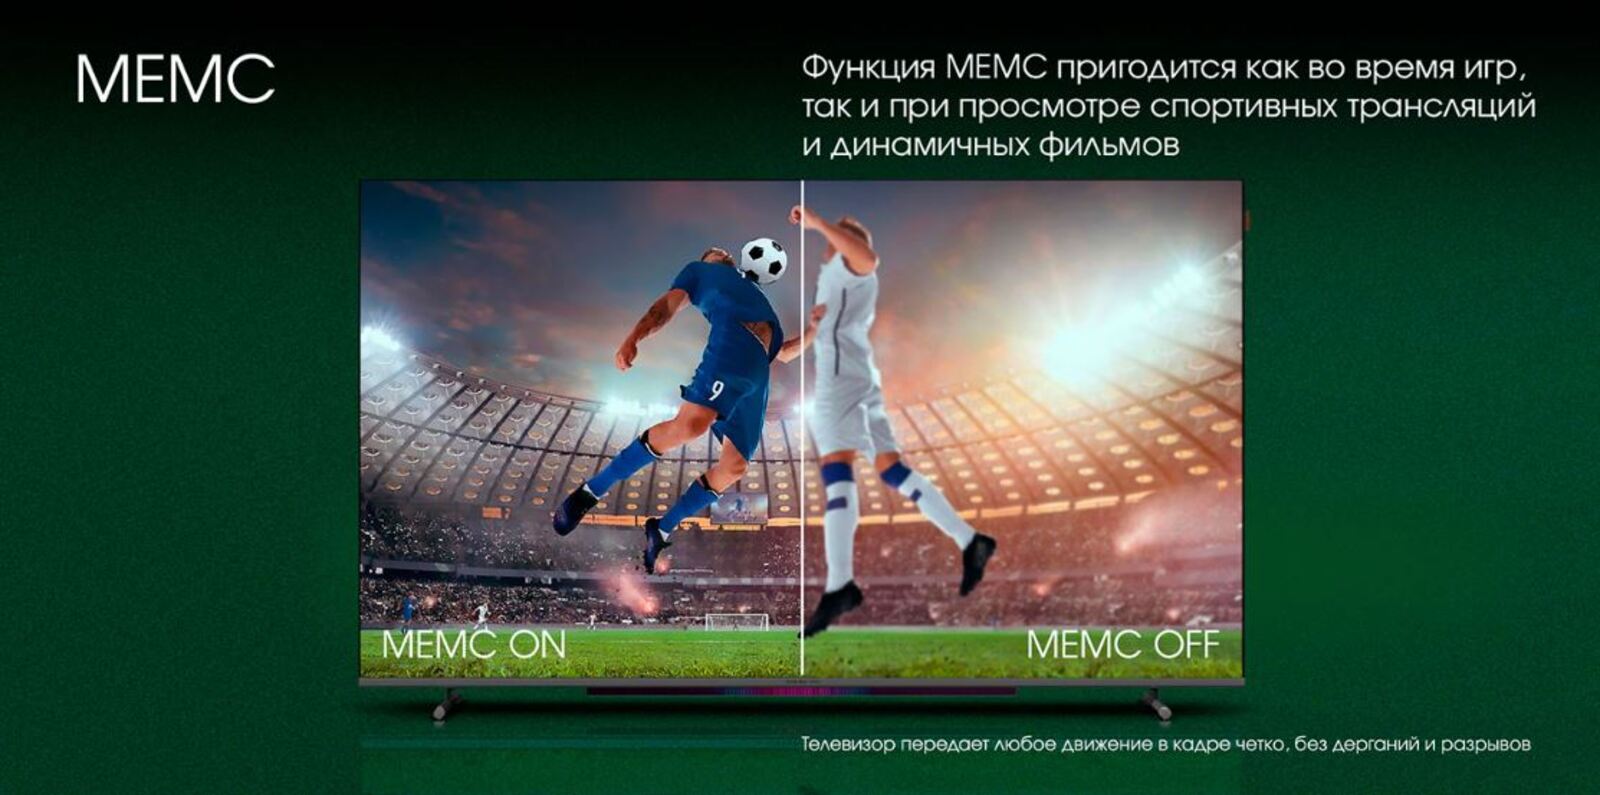 Функция МЕМС пригодится как во время игр, так и при просмотре спортивных трансляций и динамичных фильмов.